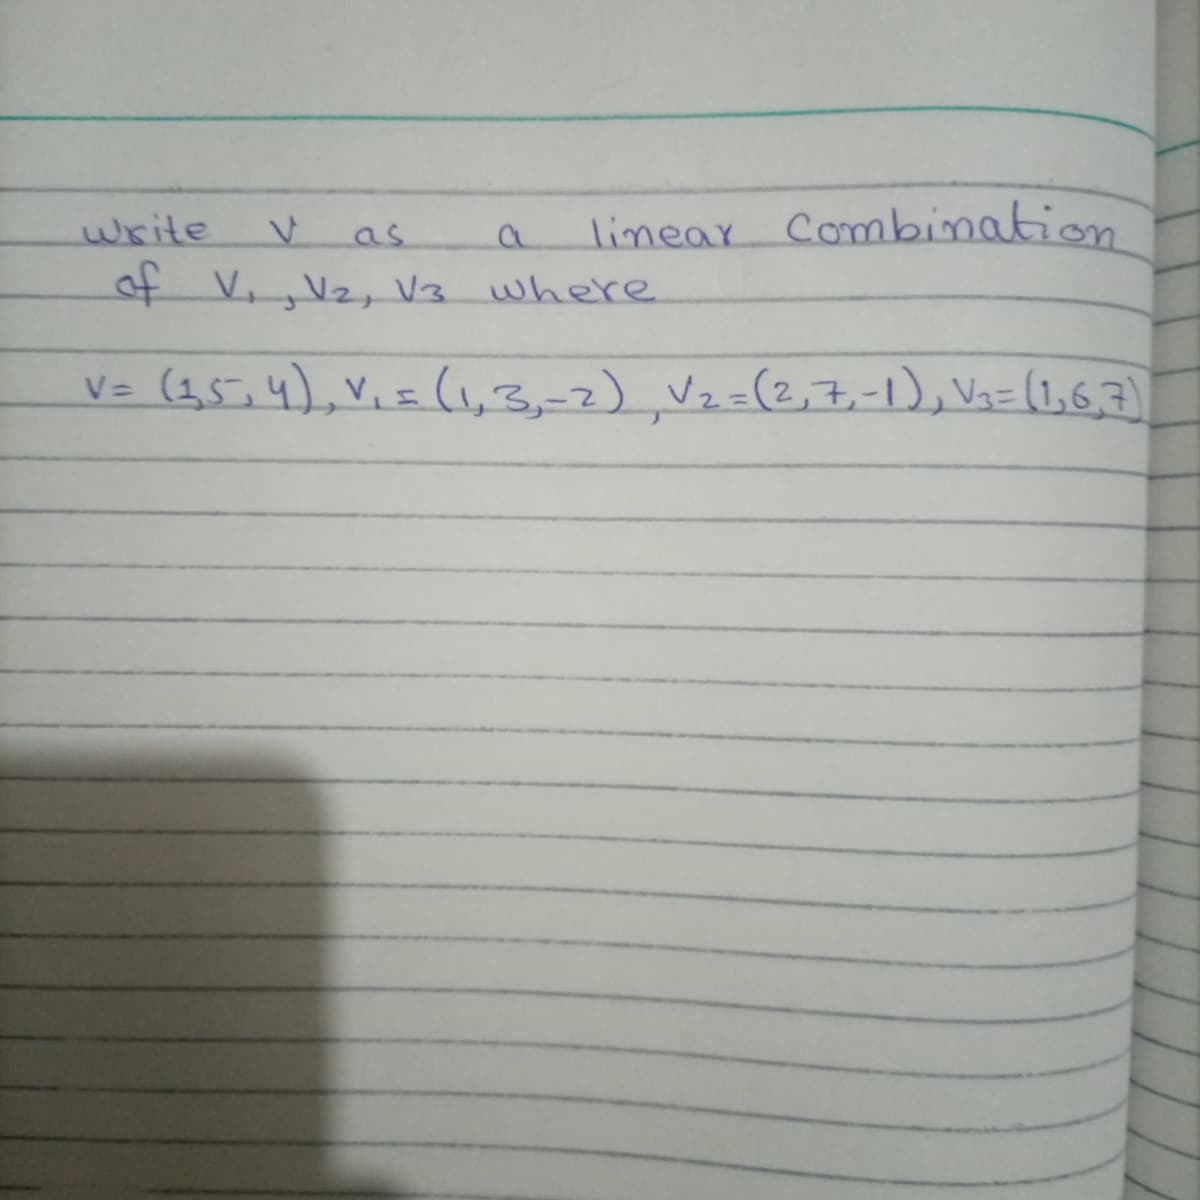 write
linear Combination
as
4 V., Vz, V3 where
(1,5,4), V.=(1,3,-2), Vz=(2,7,-1), Vi= (1,6,7)
V=
